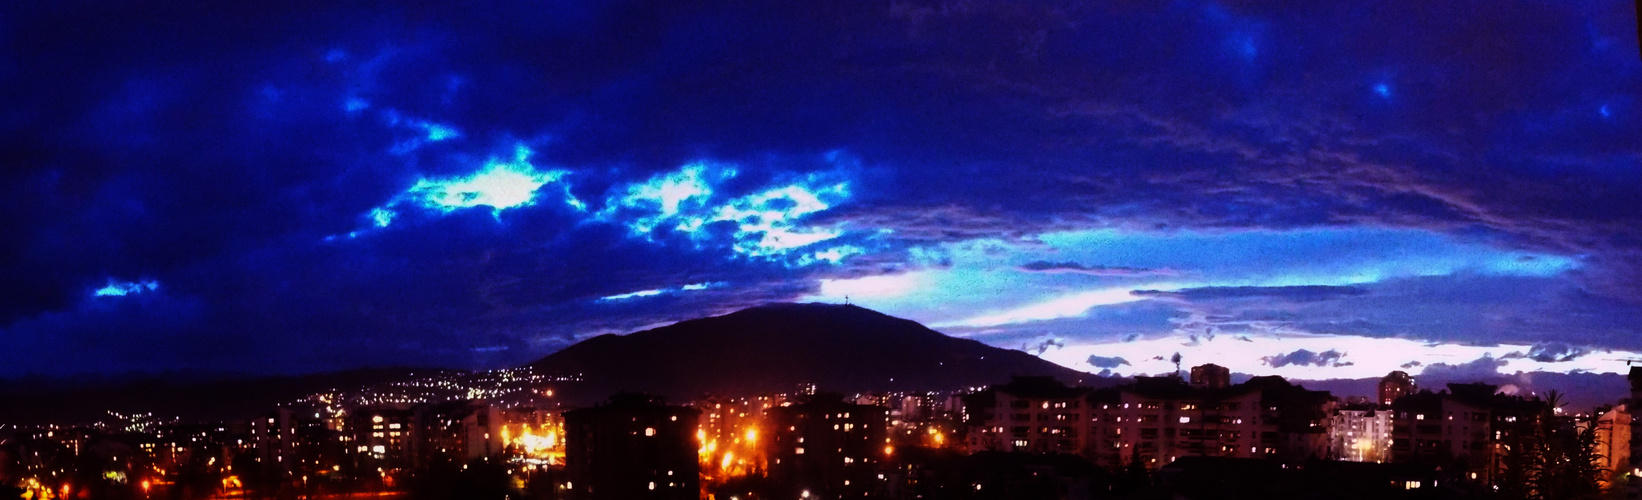 Skopje's sky